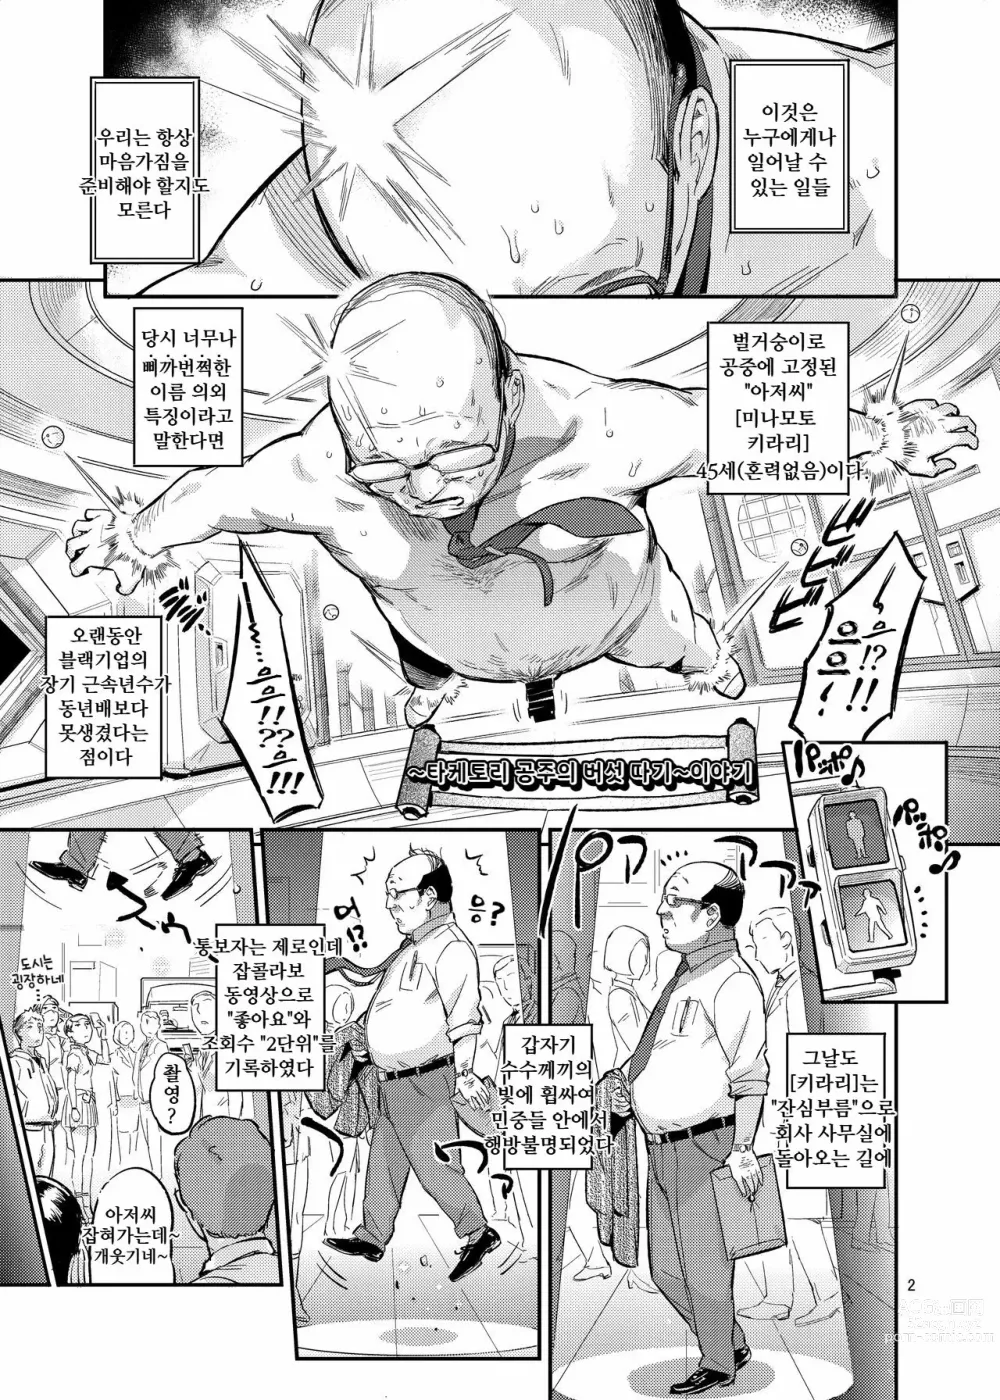 Page 2 of doujinshi 타케토리 공주의 버섯 따기 이야기